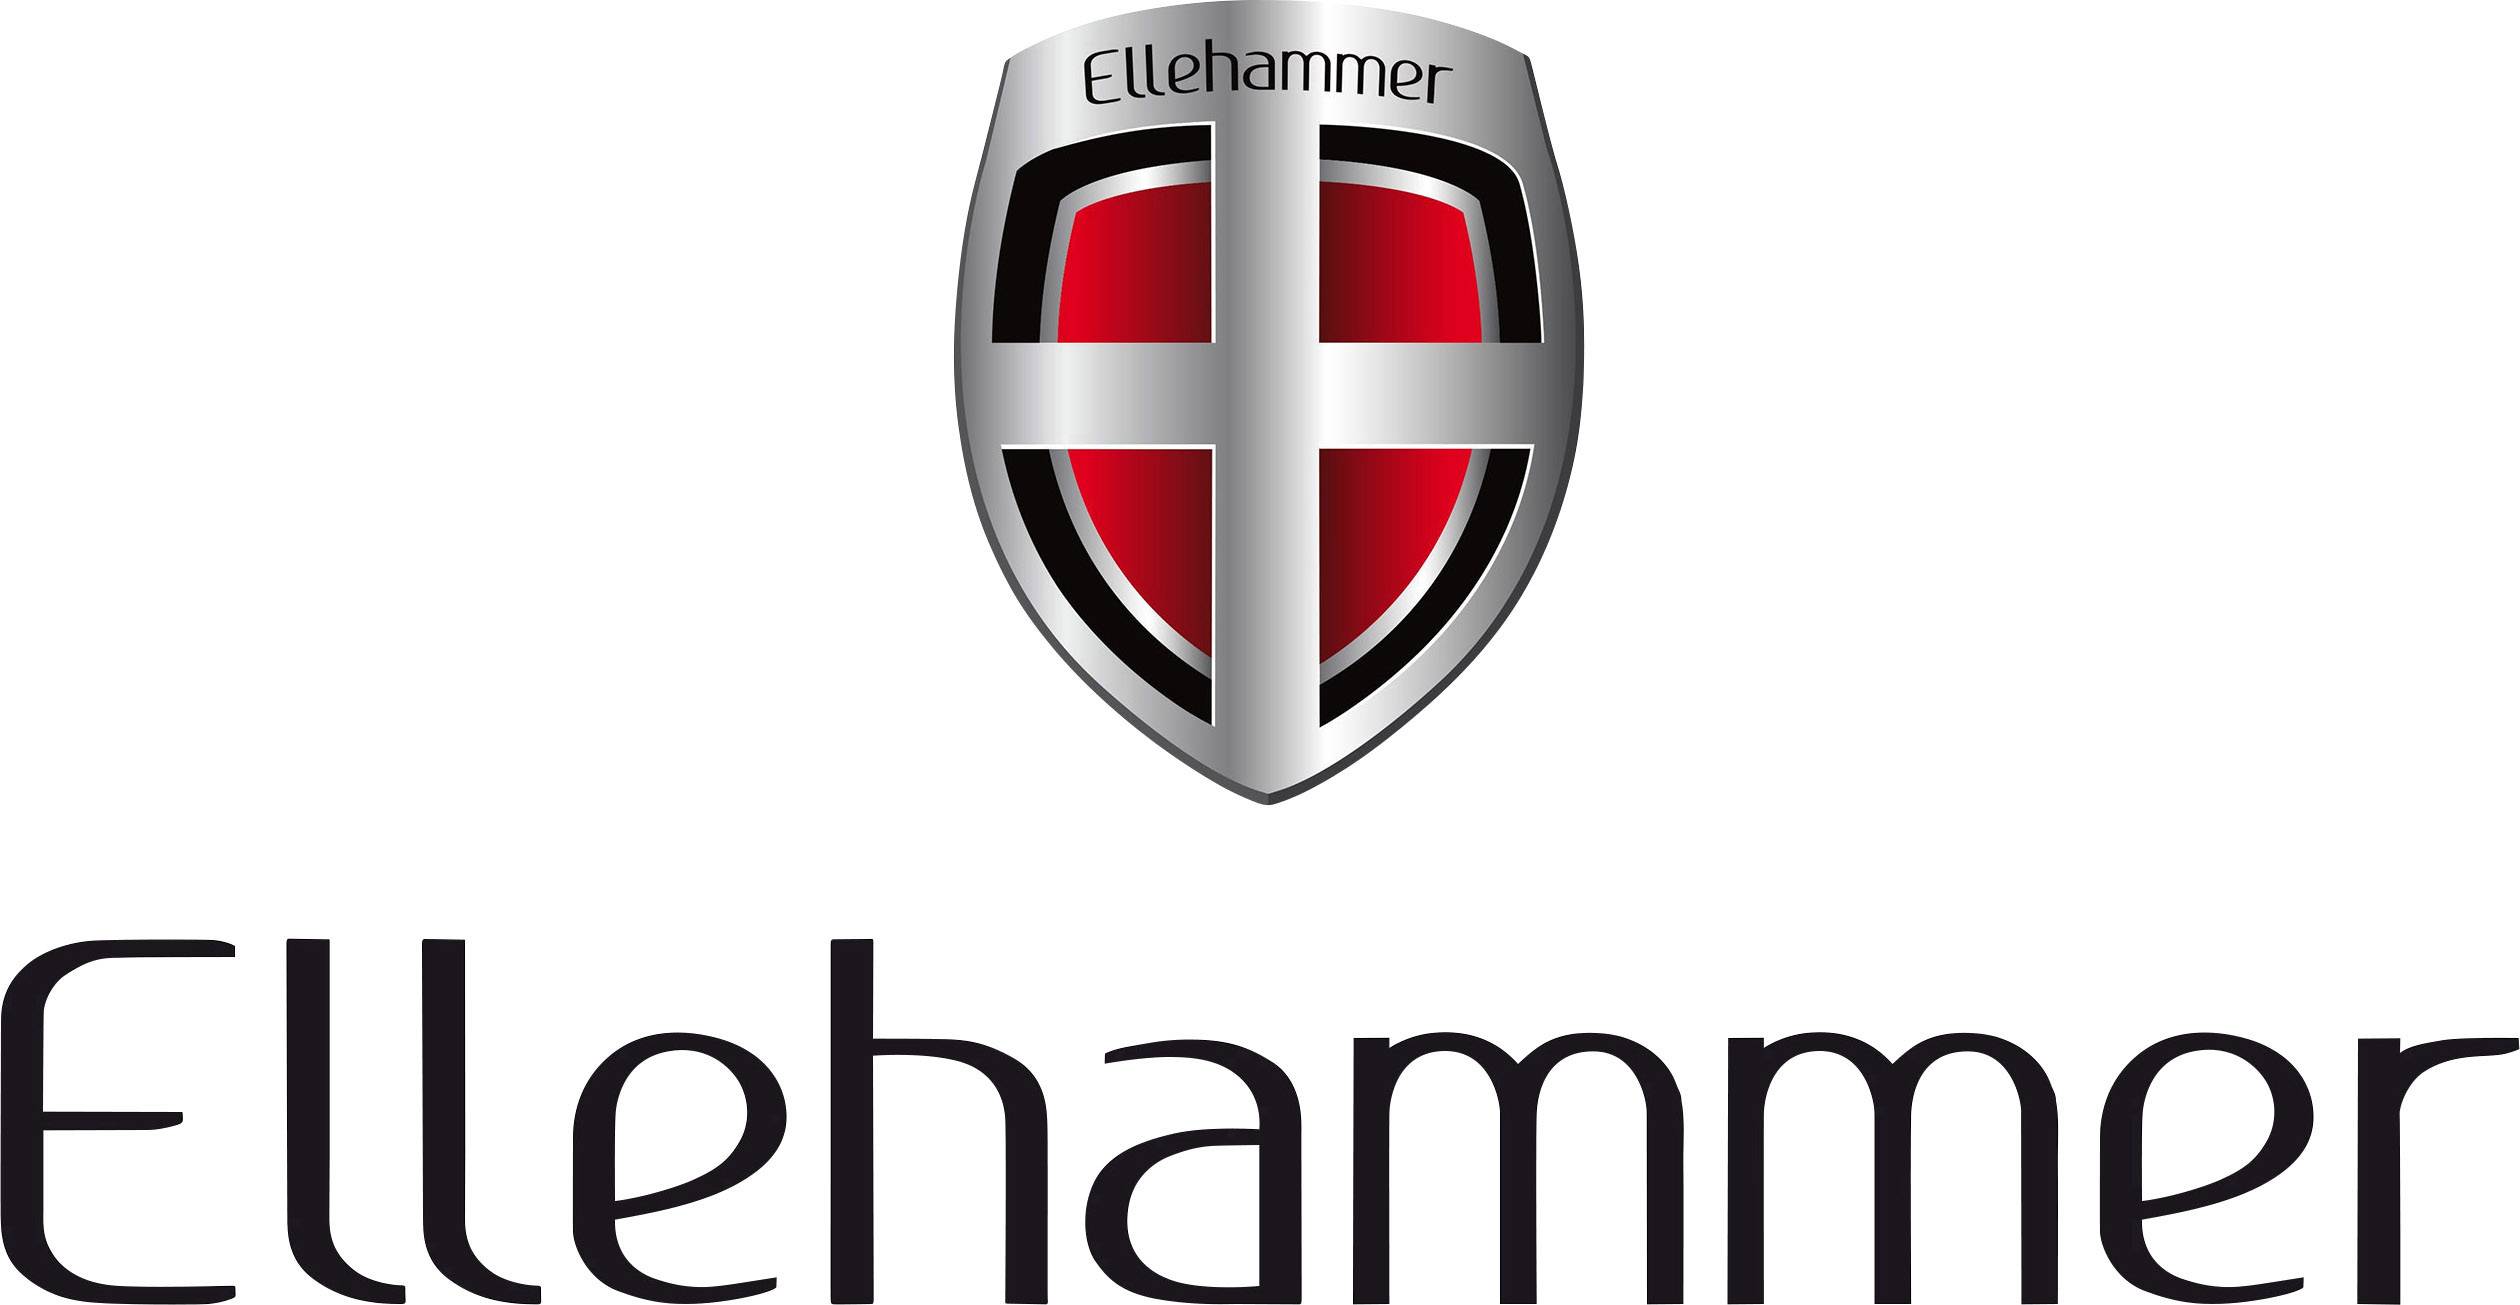 Ellehammer Logo - Ellehammer 00119997, N/A | Zamów w Conrad.pl